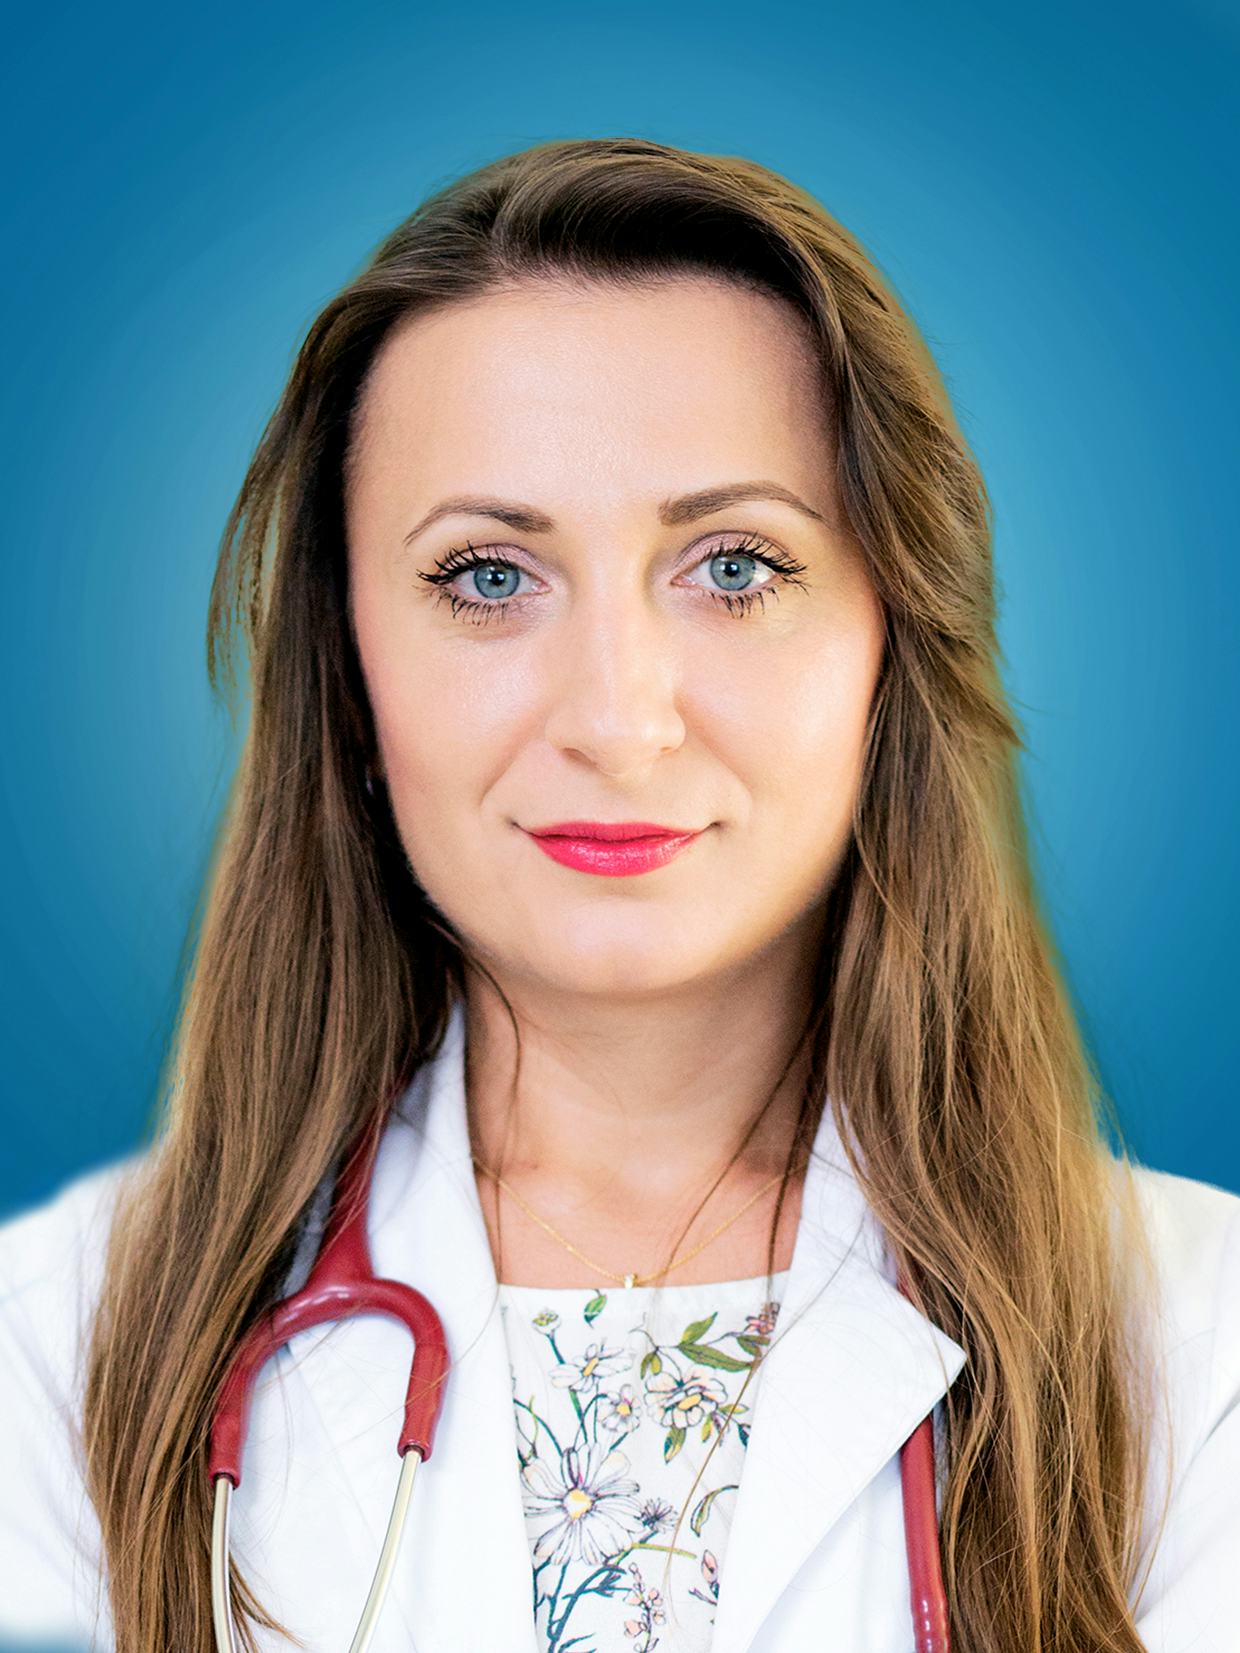 Pulsul – care sunt valorile normale? Doctor Crina Rădulescu, medic specialist cardiolog